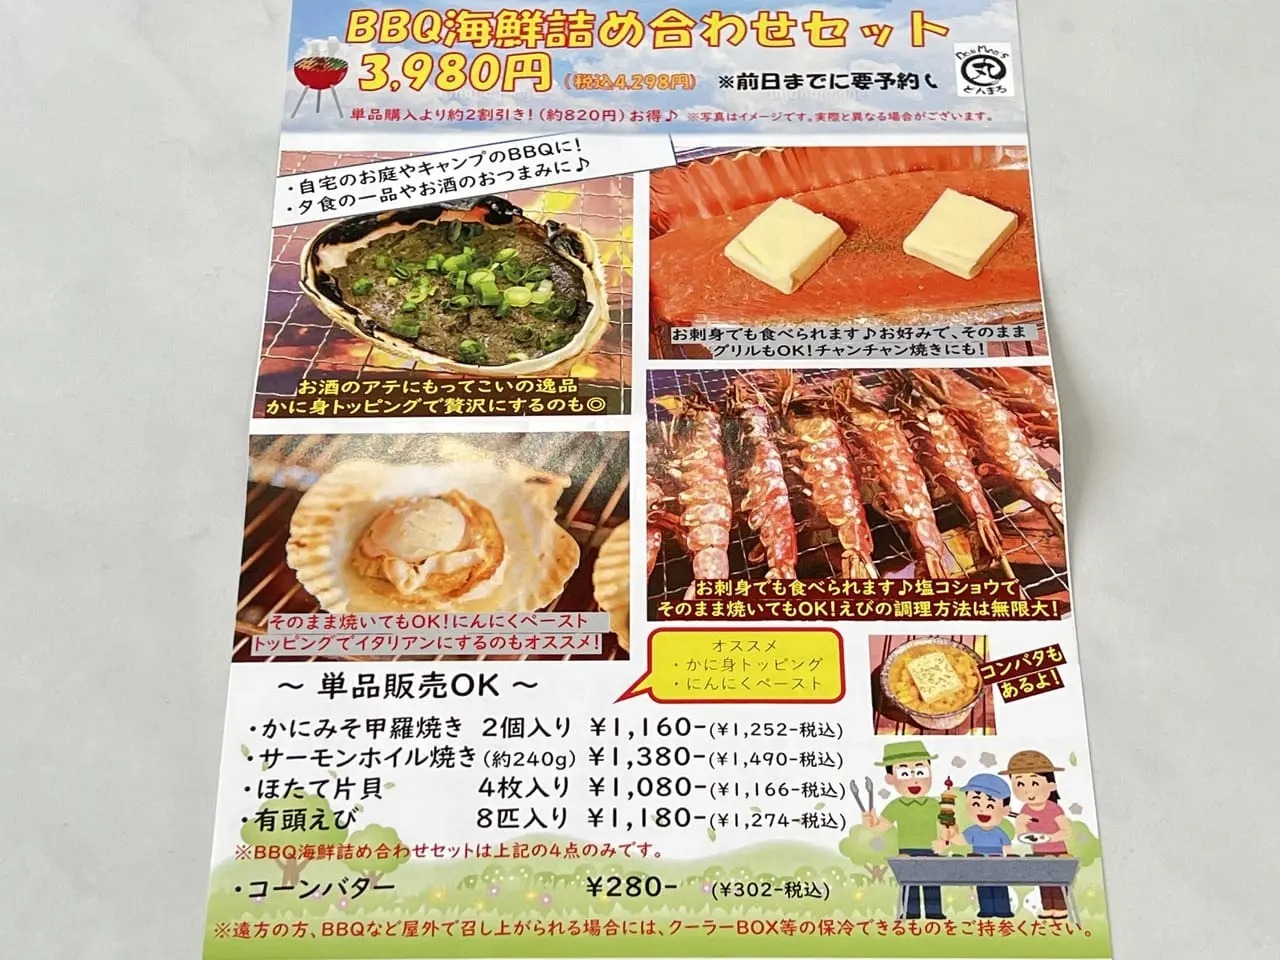 「漁師丼丸 豊田美里店」BBQ海鮮詰め合わせセット